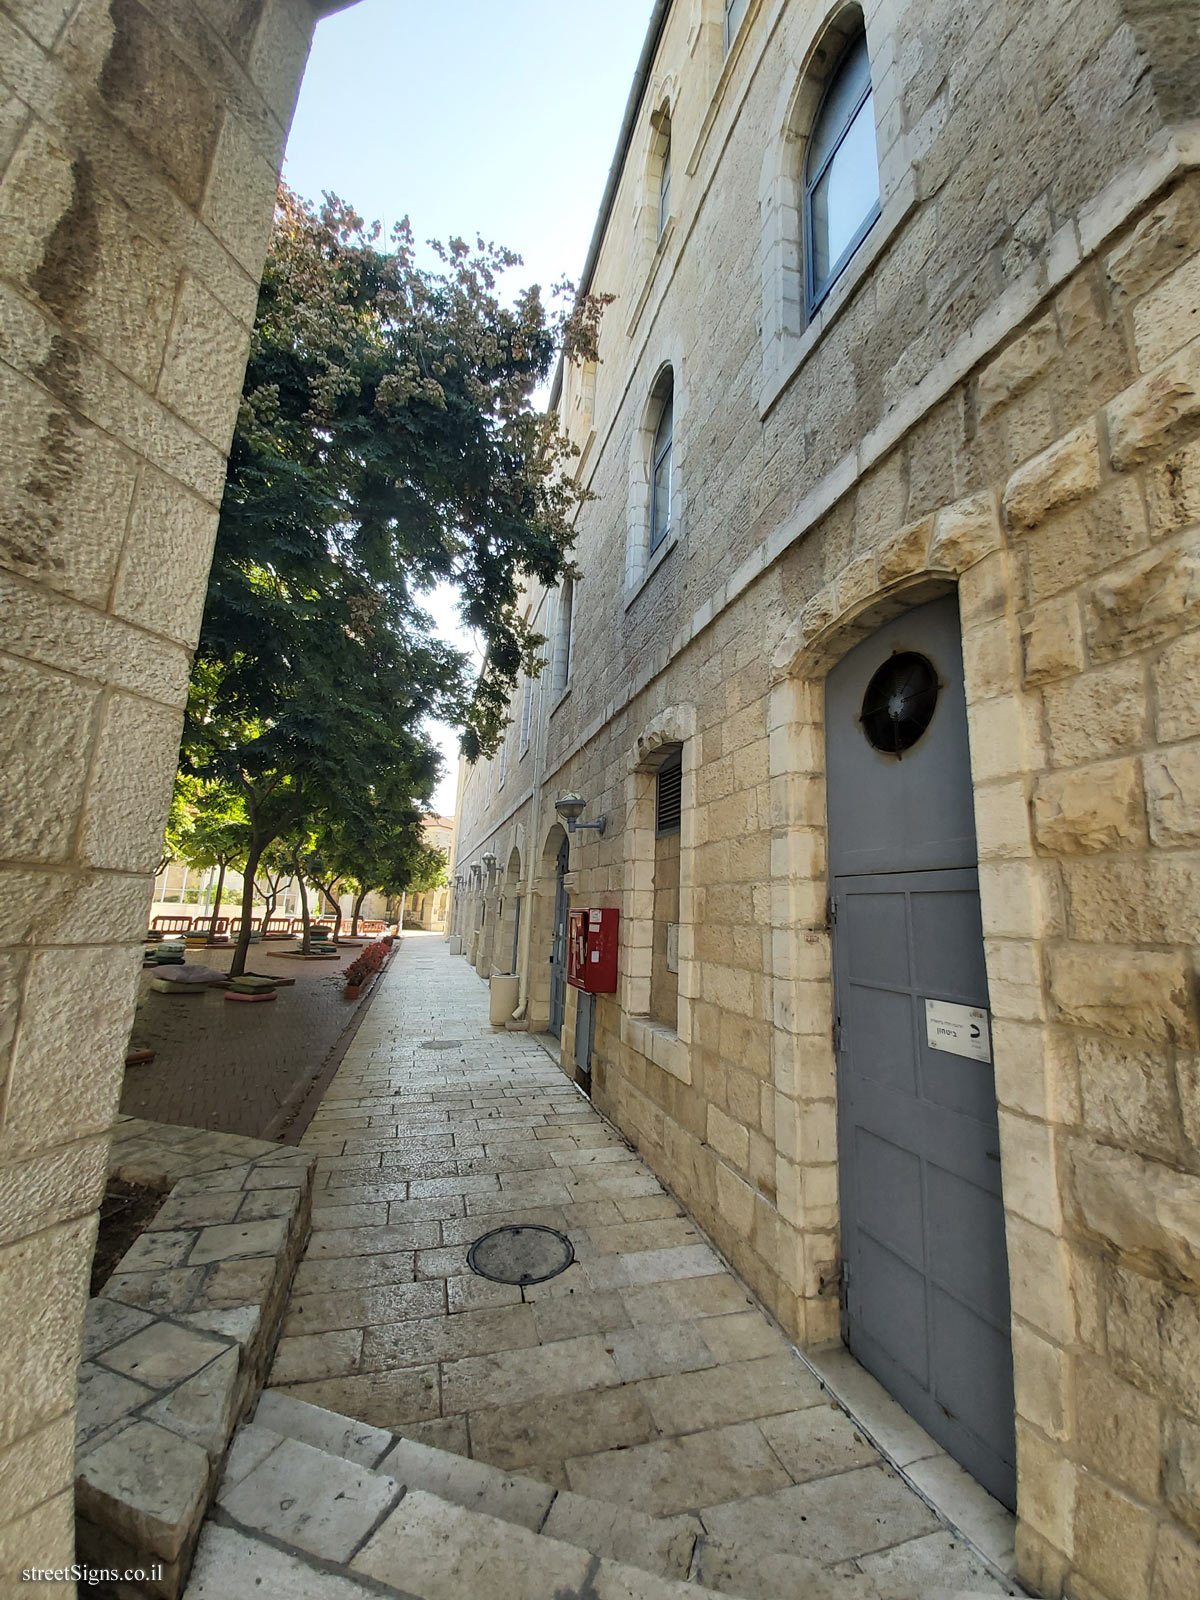 Jerusalem - The Built Heritage - Zoology Department Building - Safra Square 4, Jerusalem